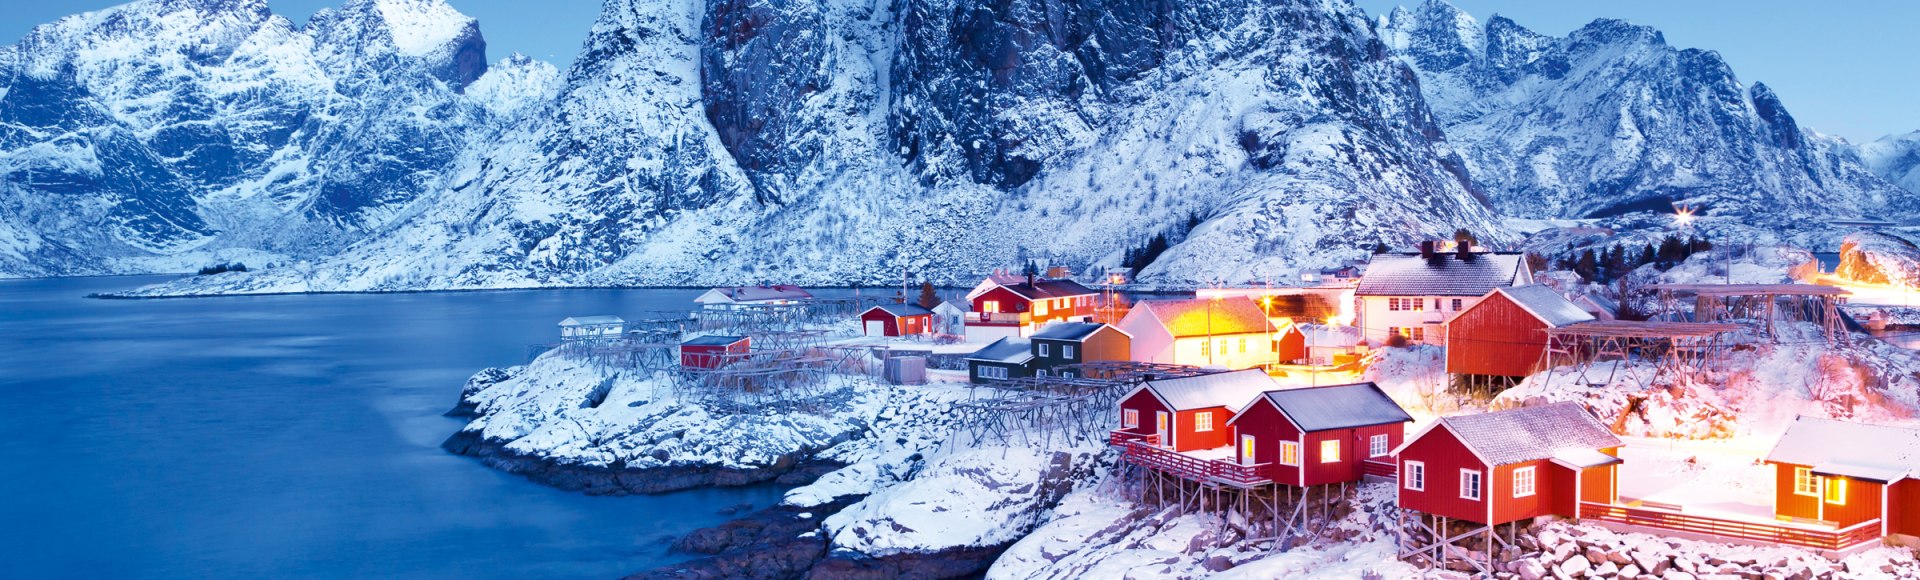 Fischerhütten auf den Lofoten, Schweden, © istockphoto.com - sara_winter